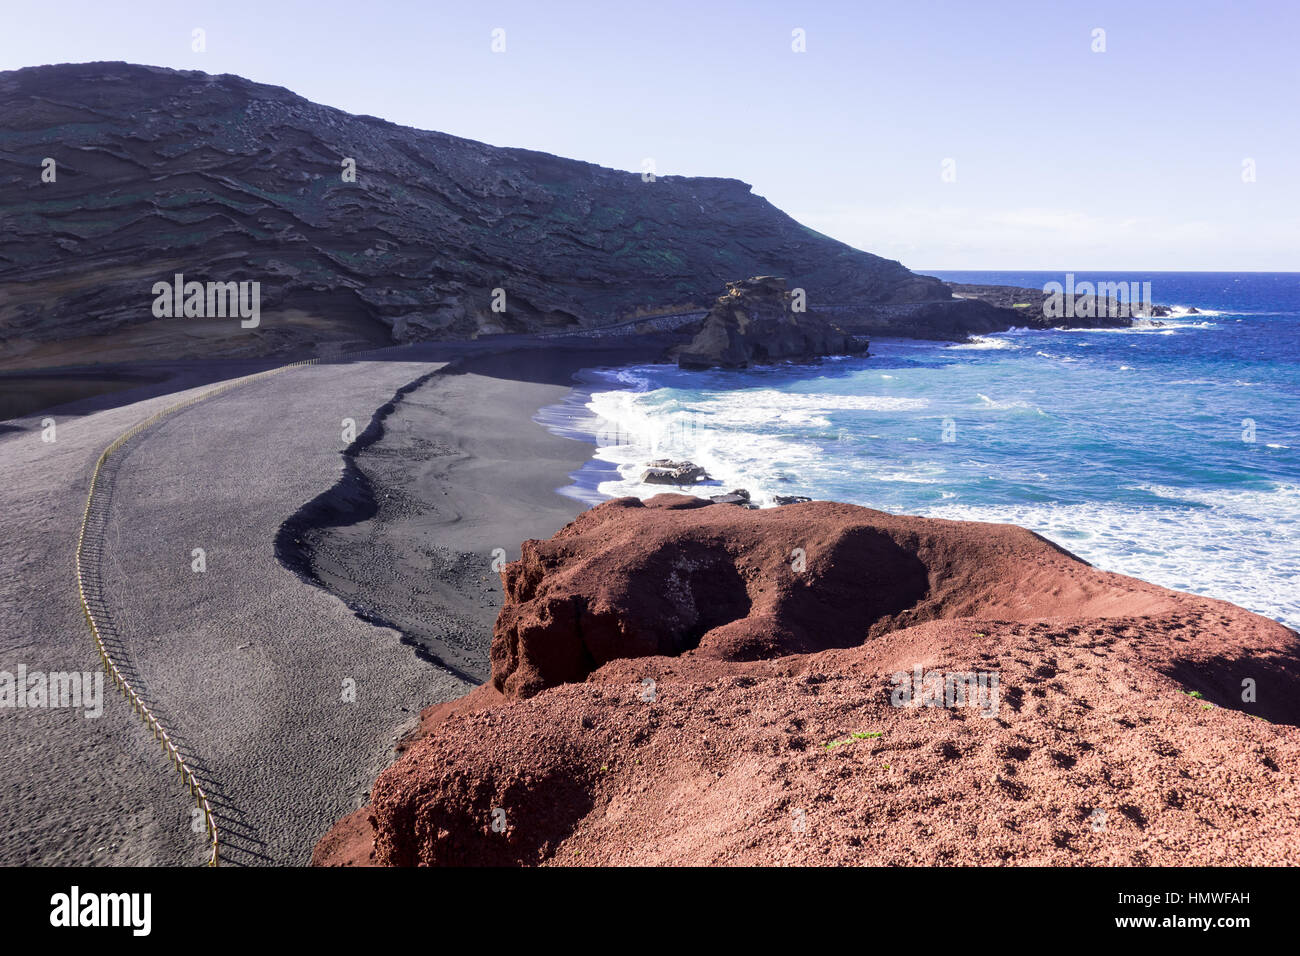 Beautiful view of the sea from Charco de los Clicos in El Golfo, Lanzarote. Stock Photo